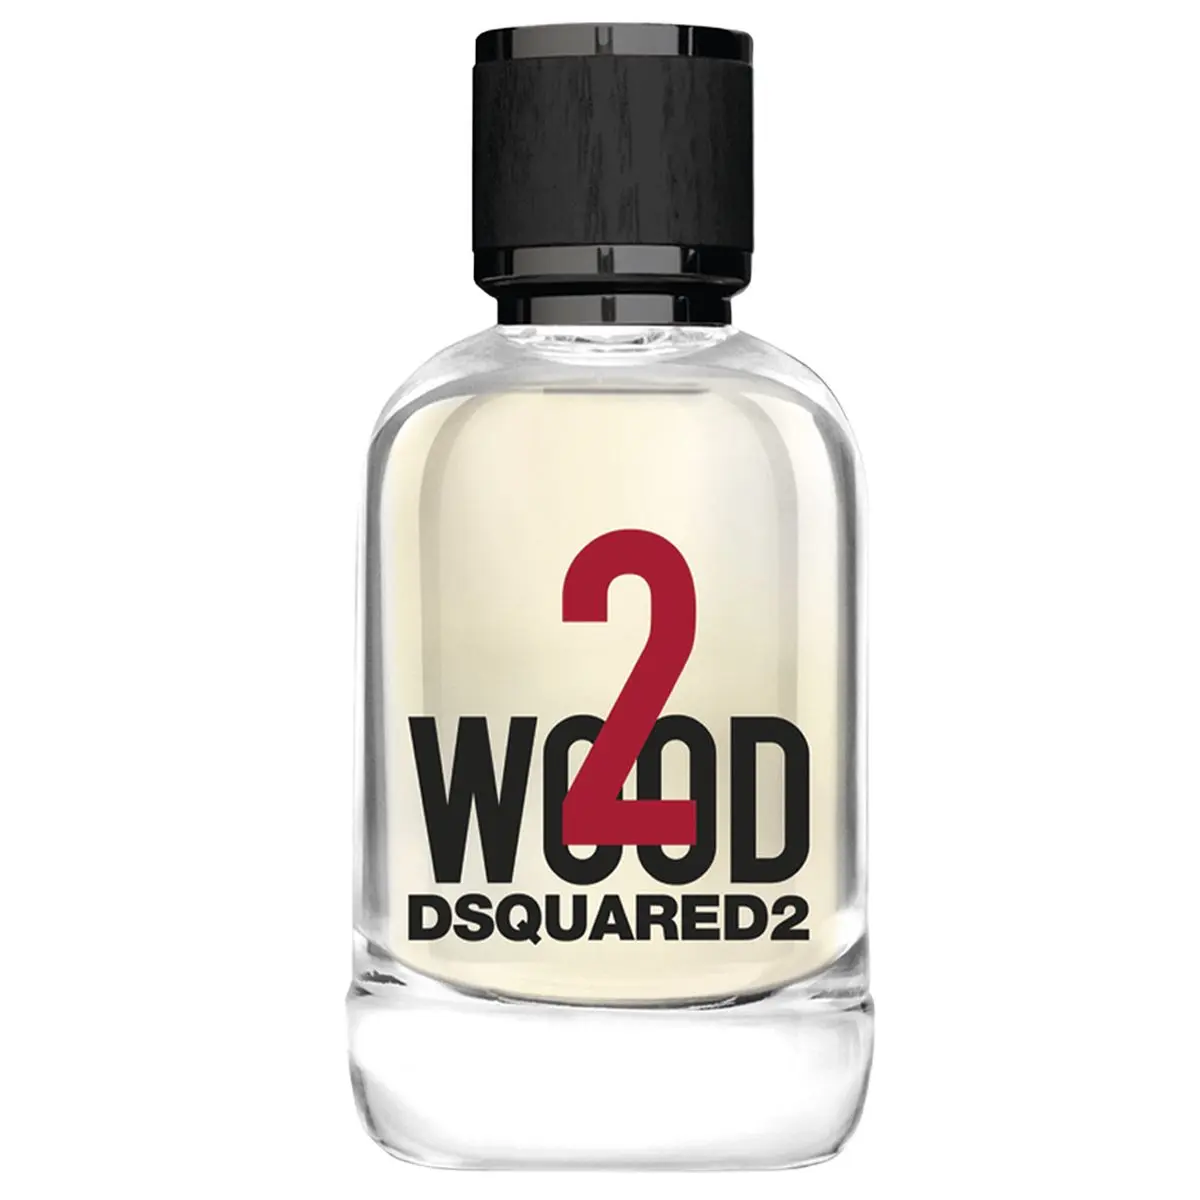 Dsquared2 Wood 2